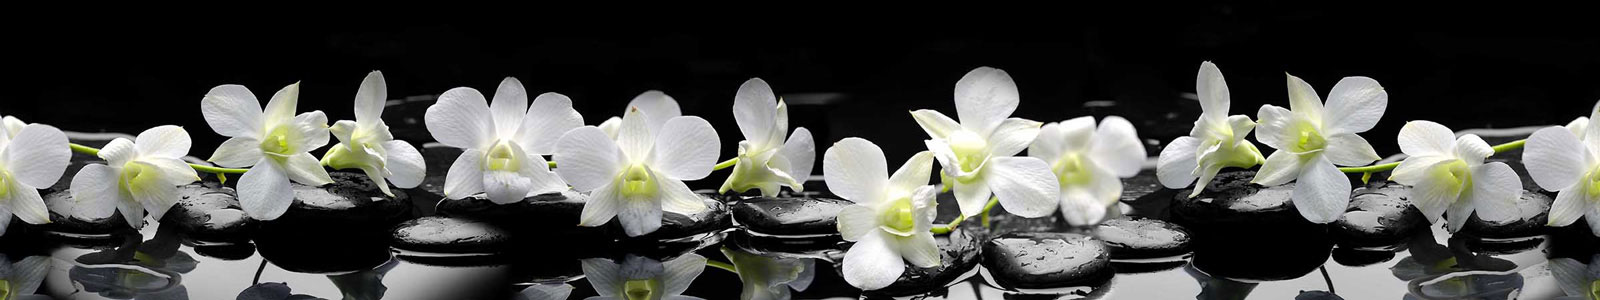 №2927 - Тигровые орхидеи на камнях дзен с каплями воды на черном фоне